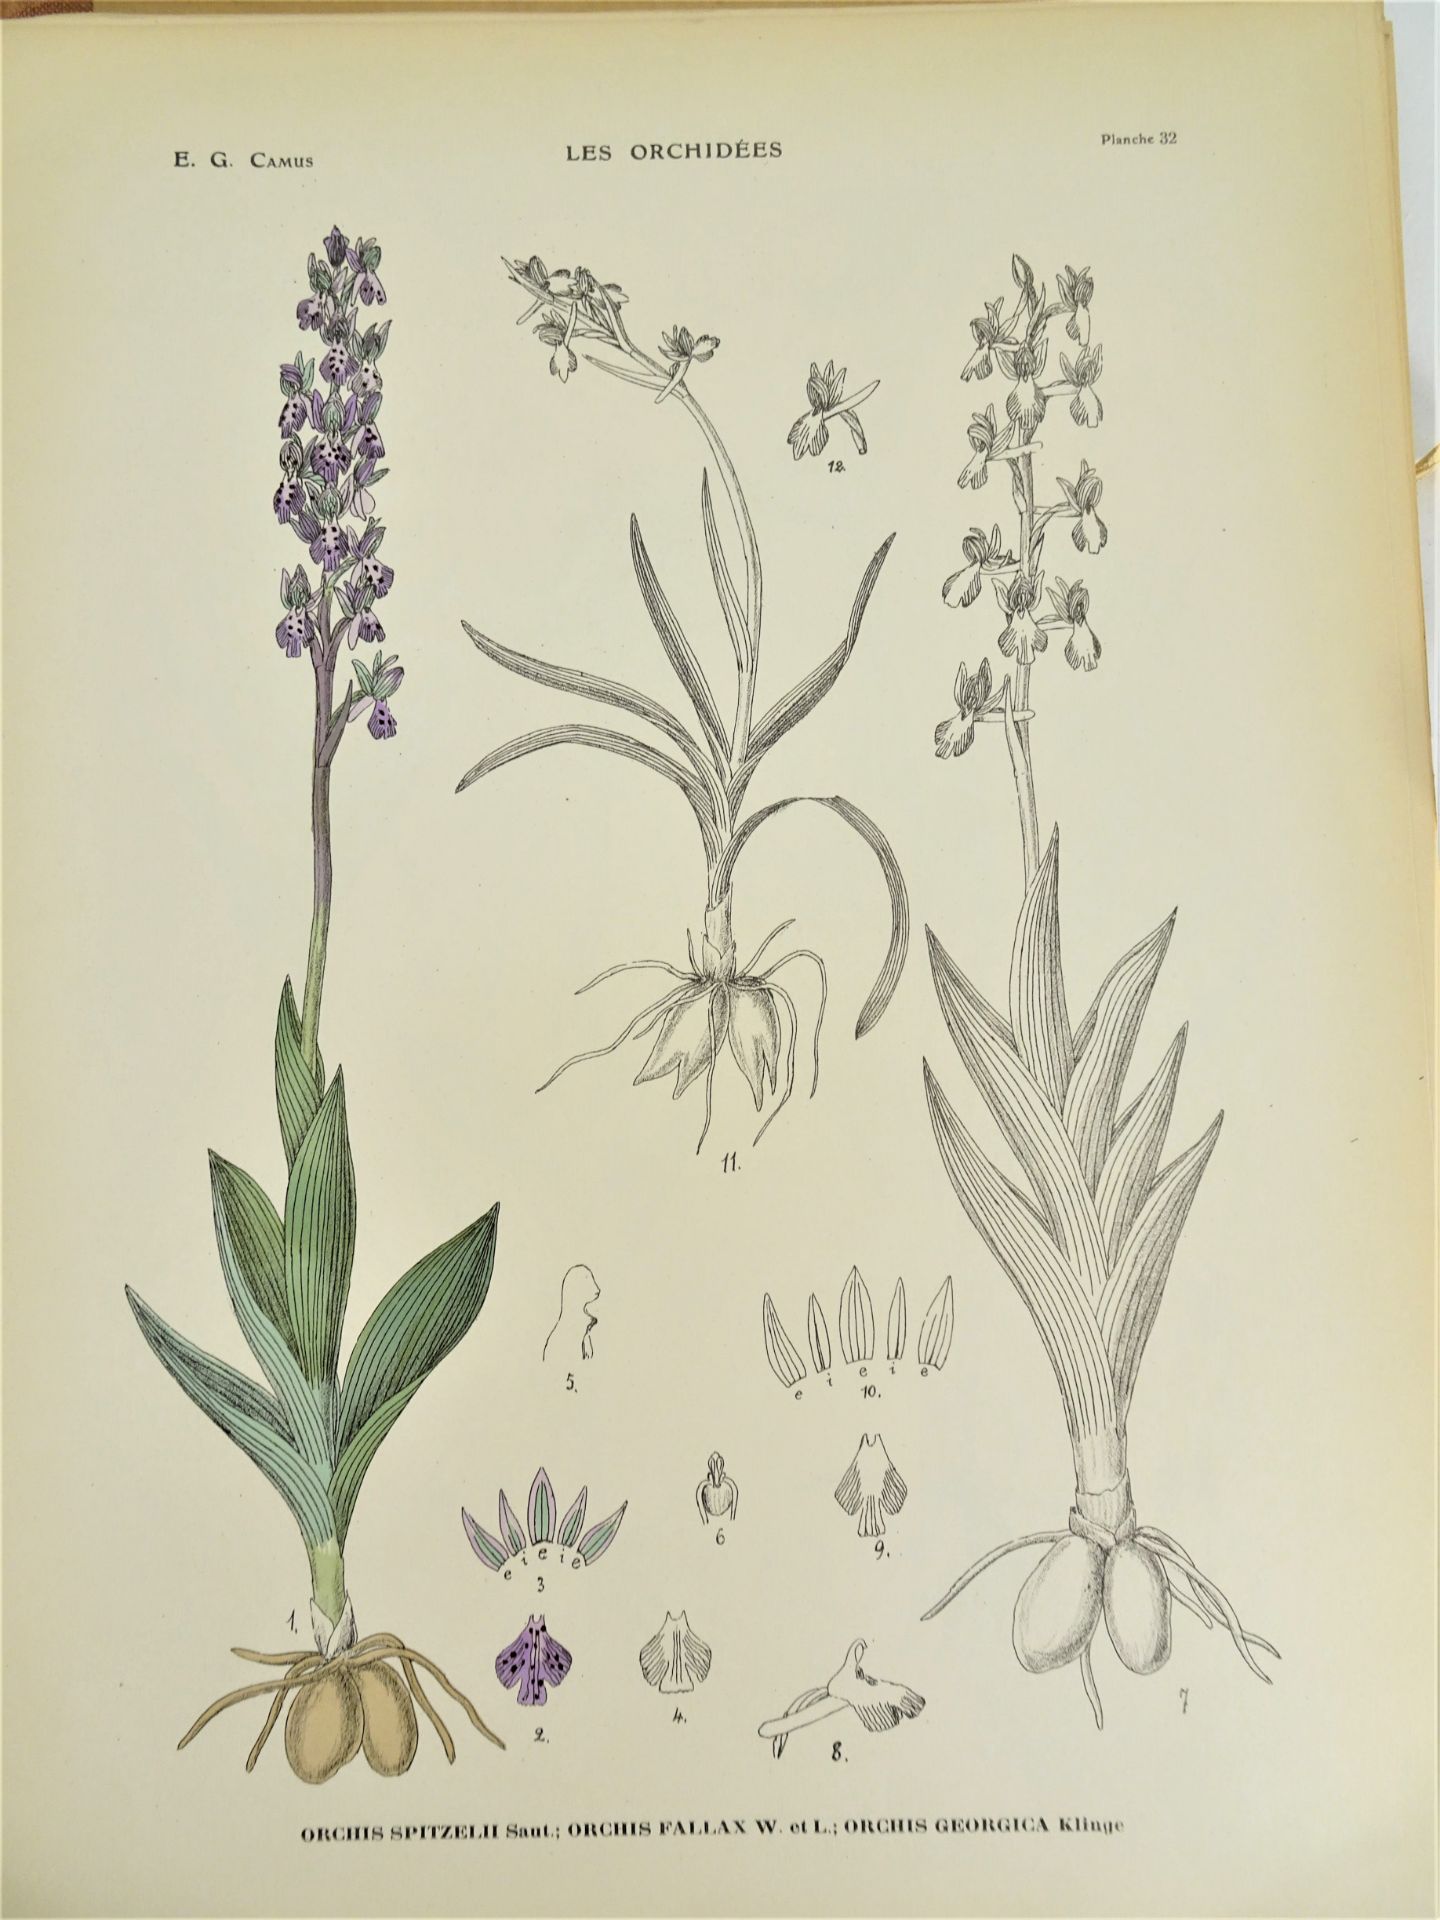 |Orchidaceae| E. G. Camus, "Iconographie des Orchidées d'Europe et du Bassin Méditerranéen", - Image 8 of 14